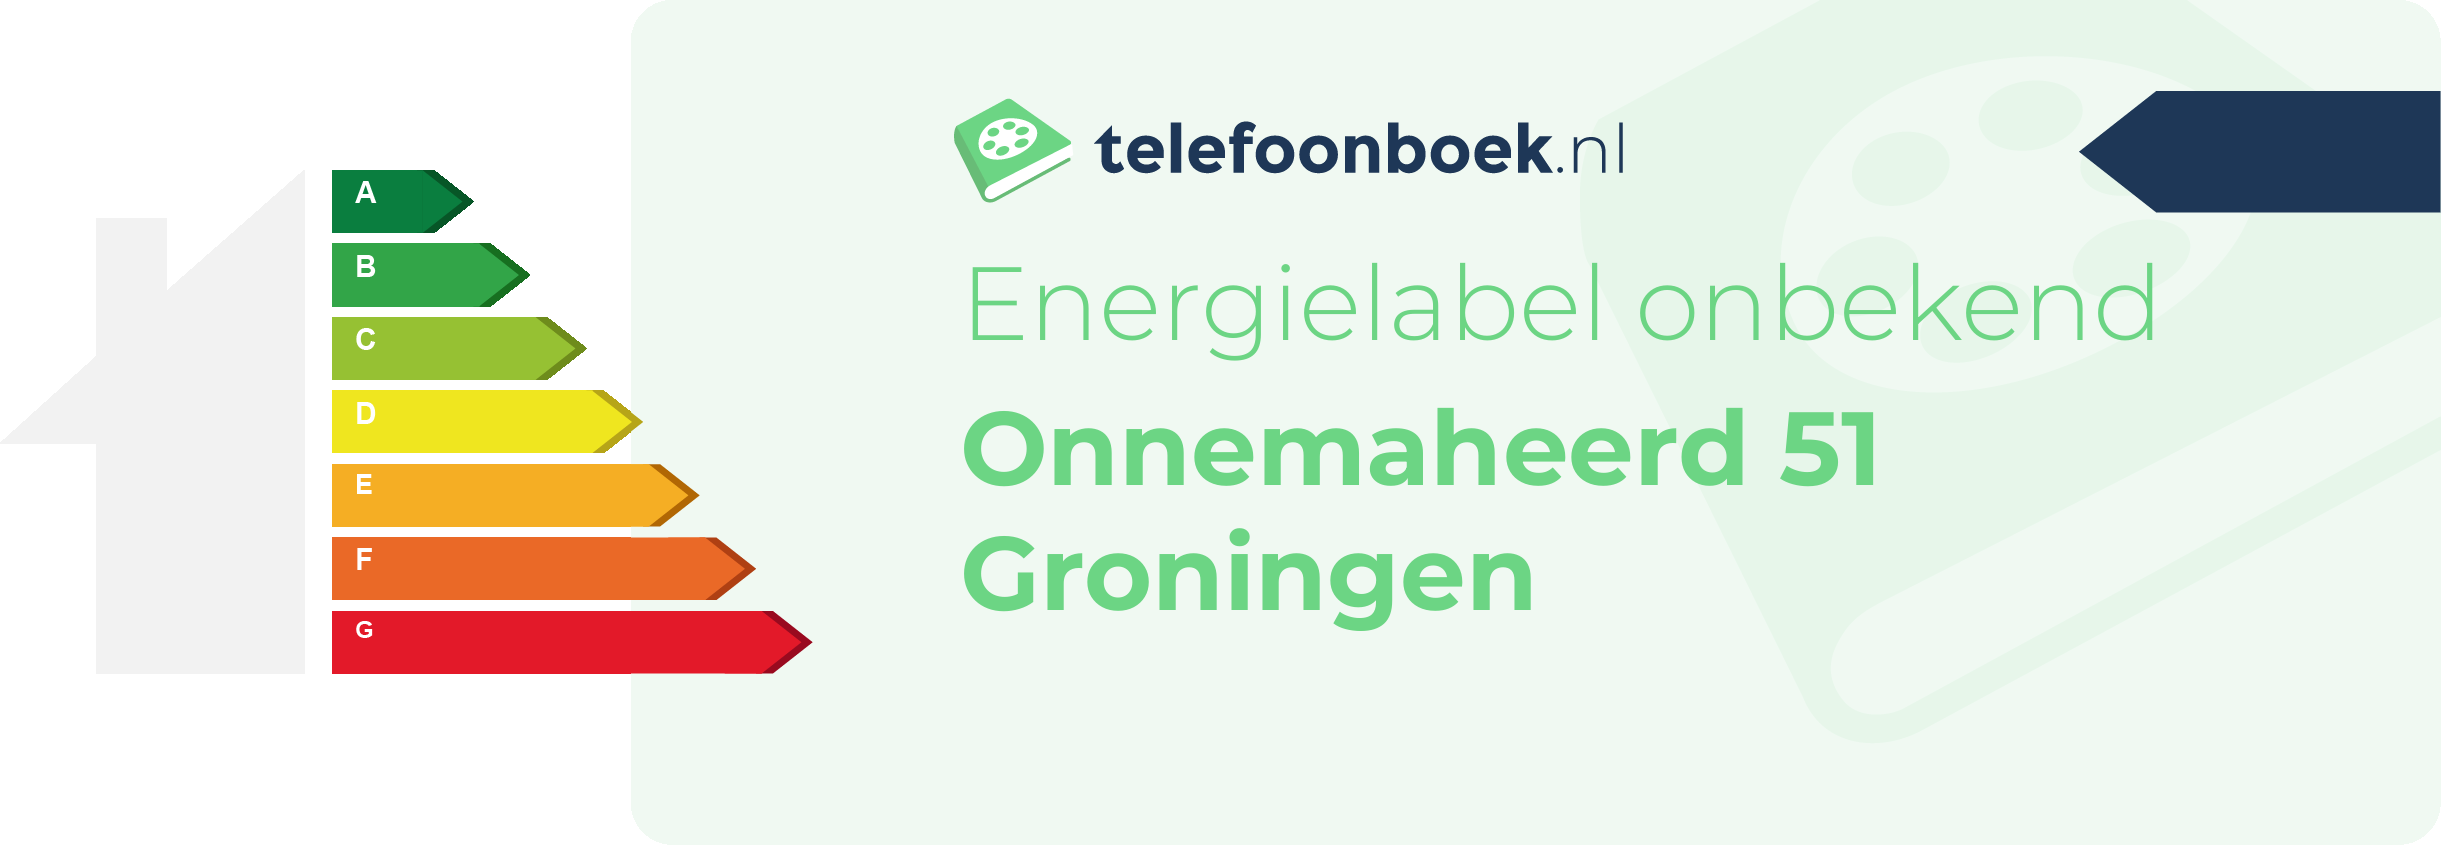 Energielabel Onnemaheerd 51 Groningen